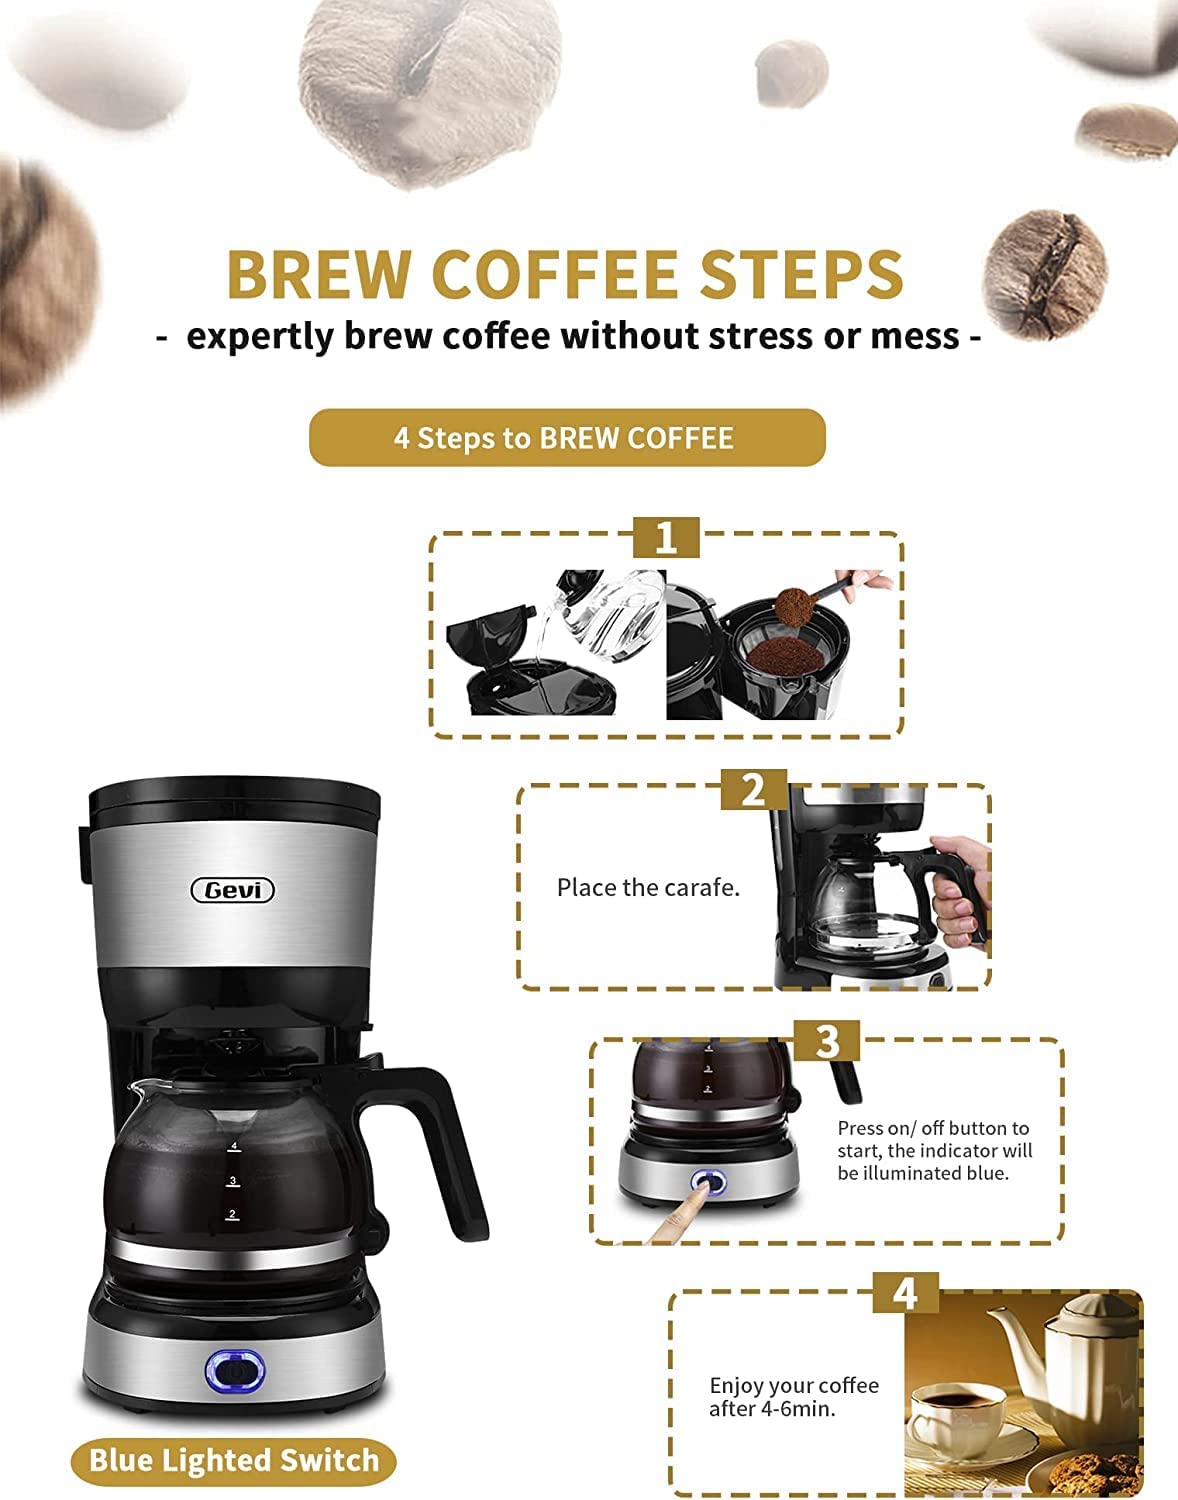 Gevi 5-Cup Coffee Maker – GEVI